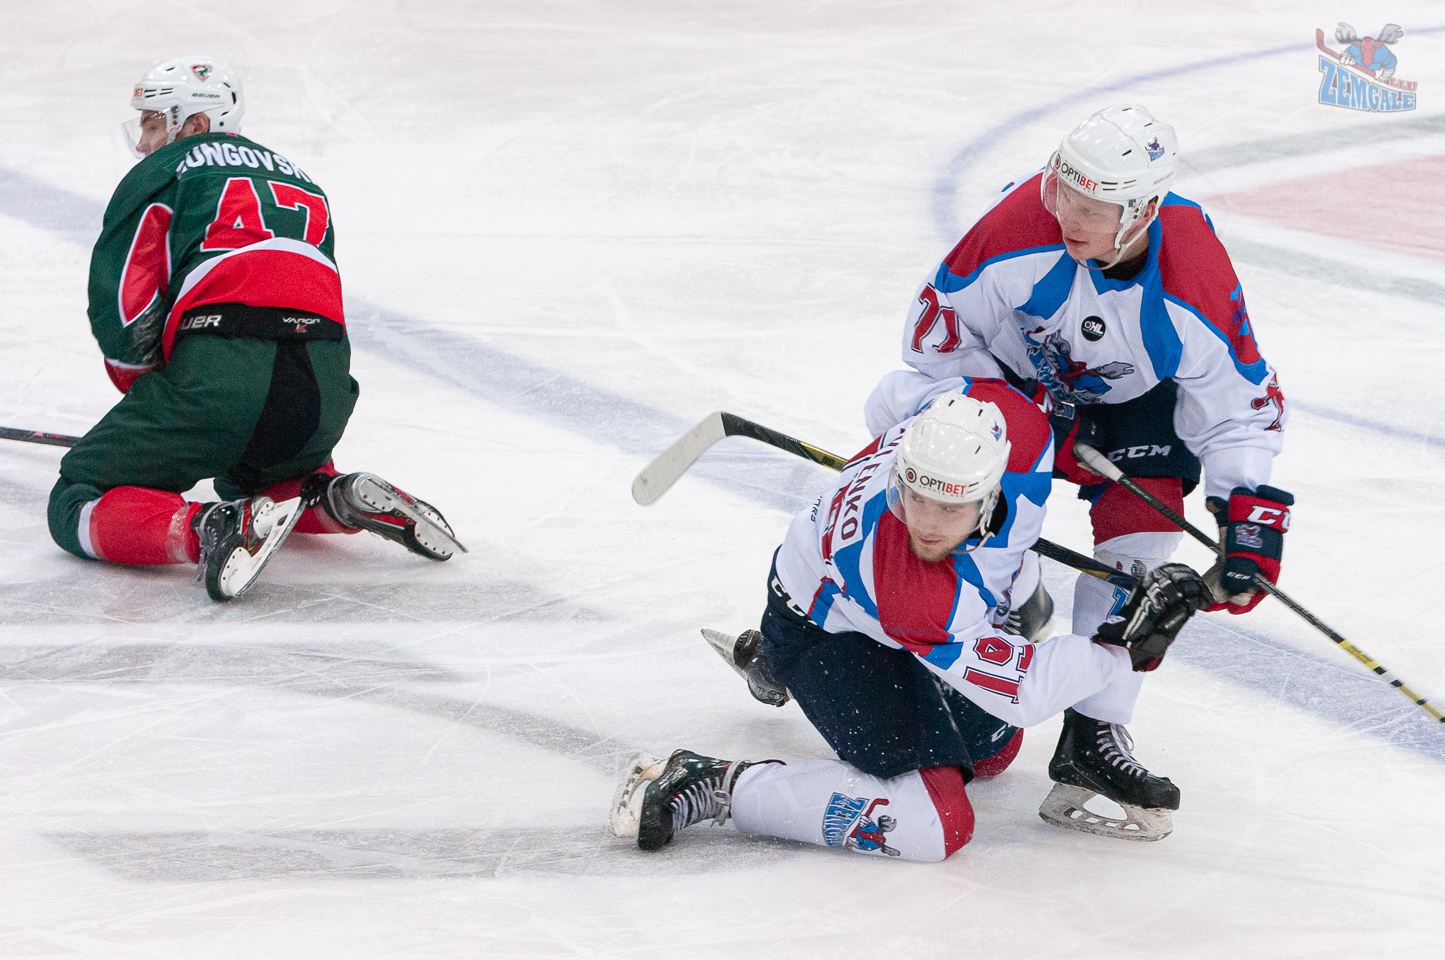 Optibet hokeja līgas regulāra čempionāta spēle starp HK “Liepāja” un HK “Zemgale/LLU” LOC ledus hallē Liepājā 2019. gada 13. novembrī. Foto: Ruslans Antropovs | rusantro.com